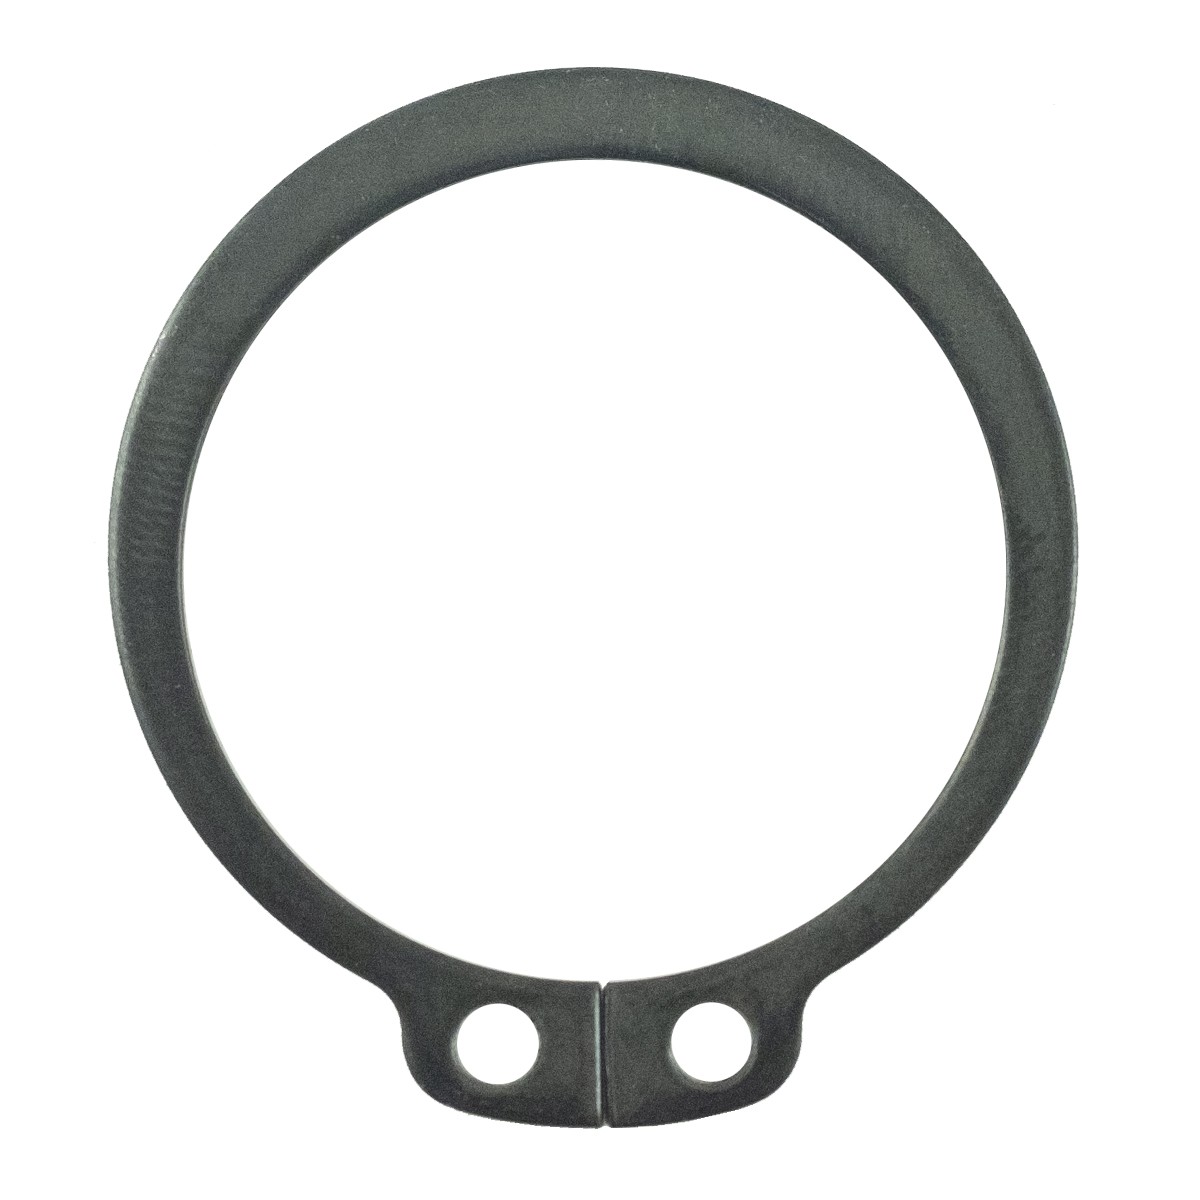 Seger ring LS MT3.35 / LS MT3.40 / S810032001 / 40029274